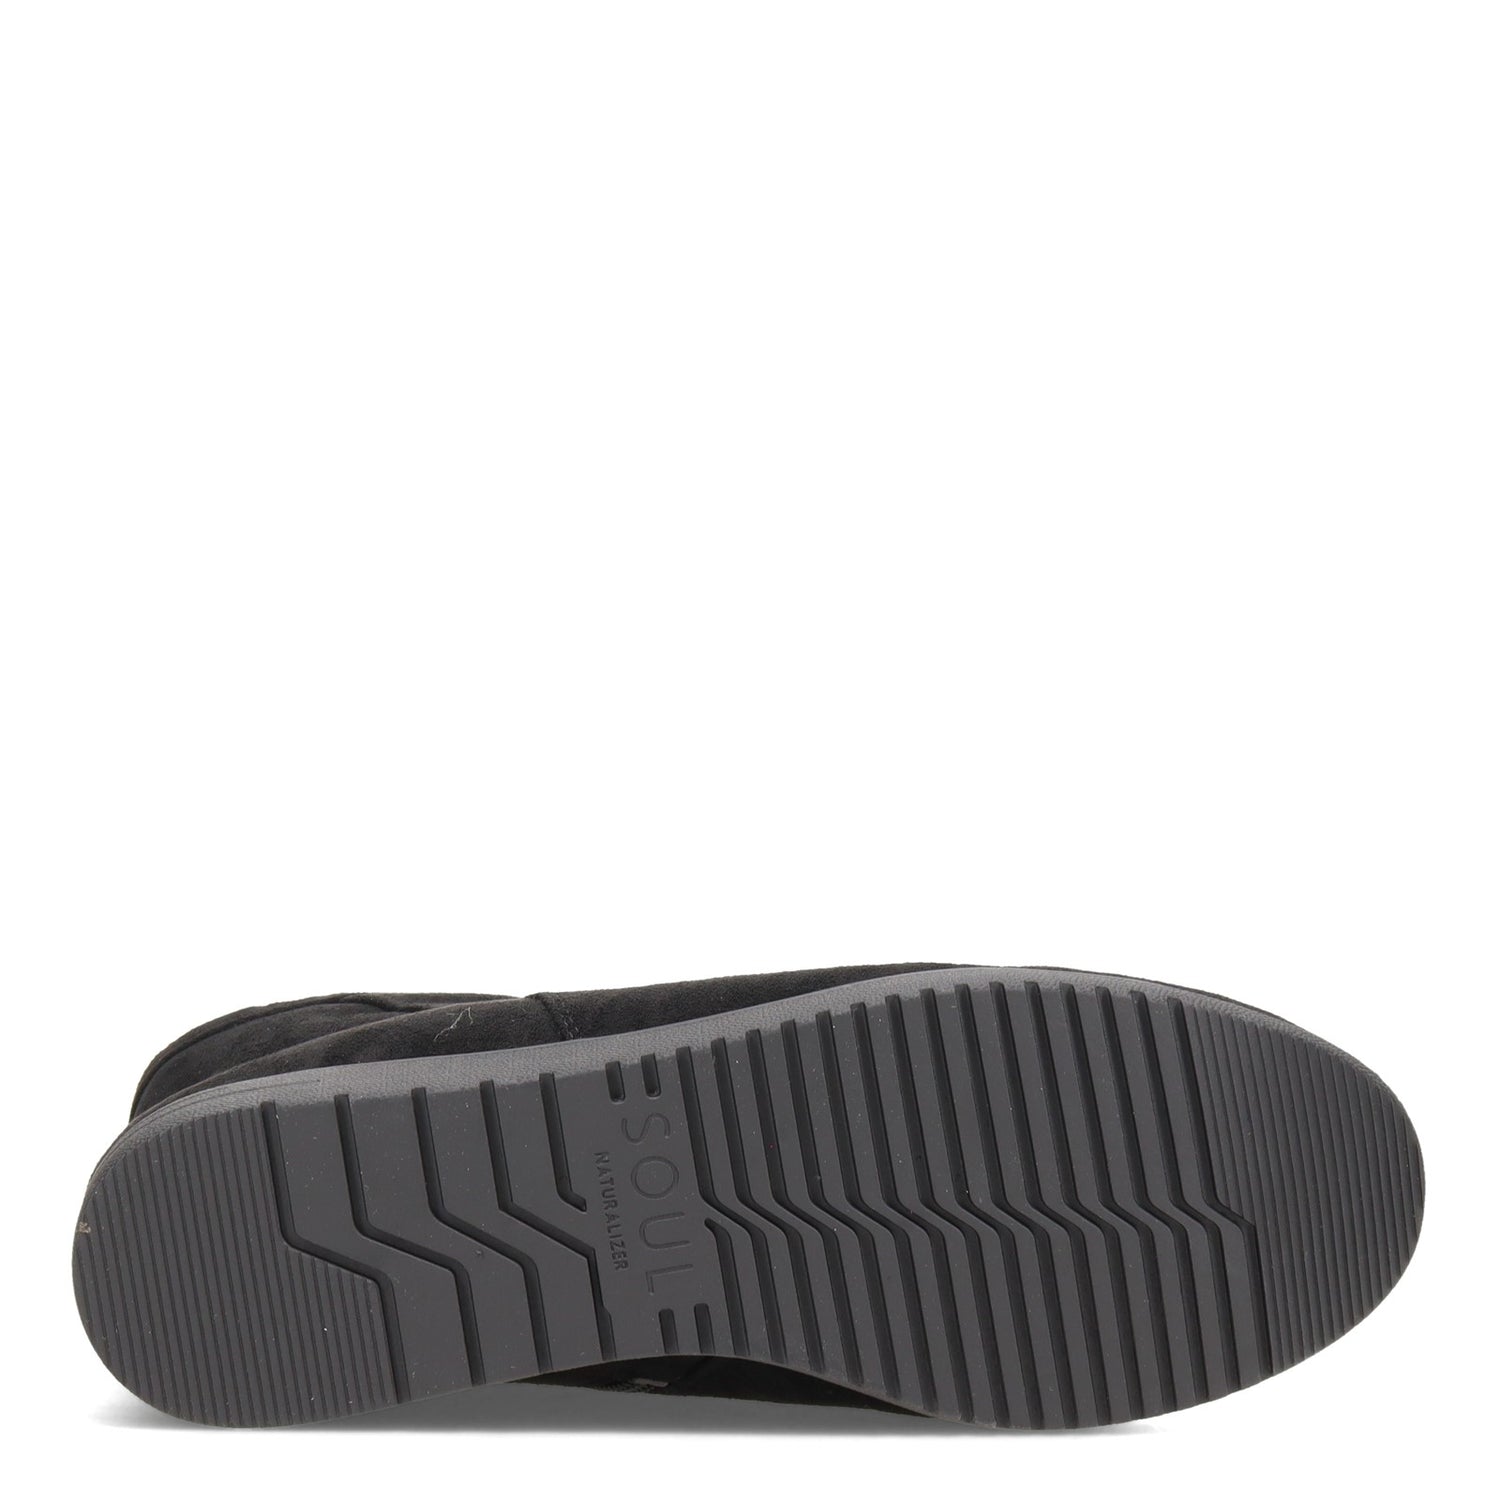 Peltz Shoes  Women's SOUL Naturalizer Indie Boot BLACK E9057F0003